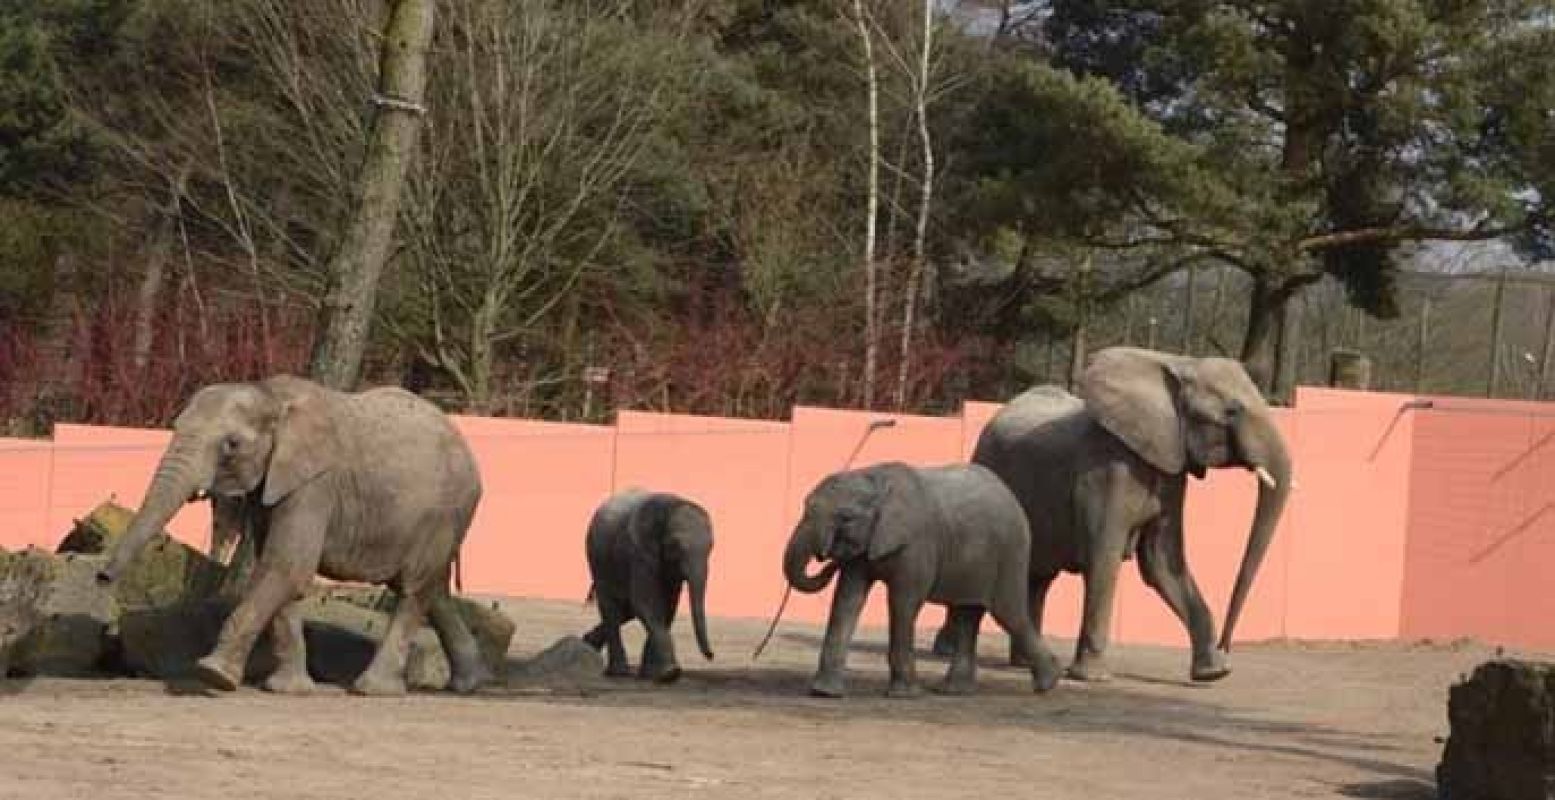 De familie is elke dag even in het buitenverblijf te zien. Foto: Safaripark Beekse Bergen